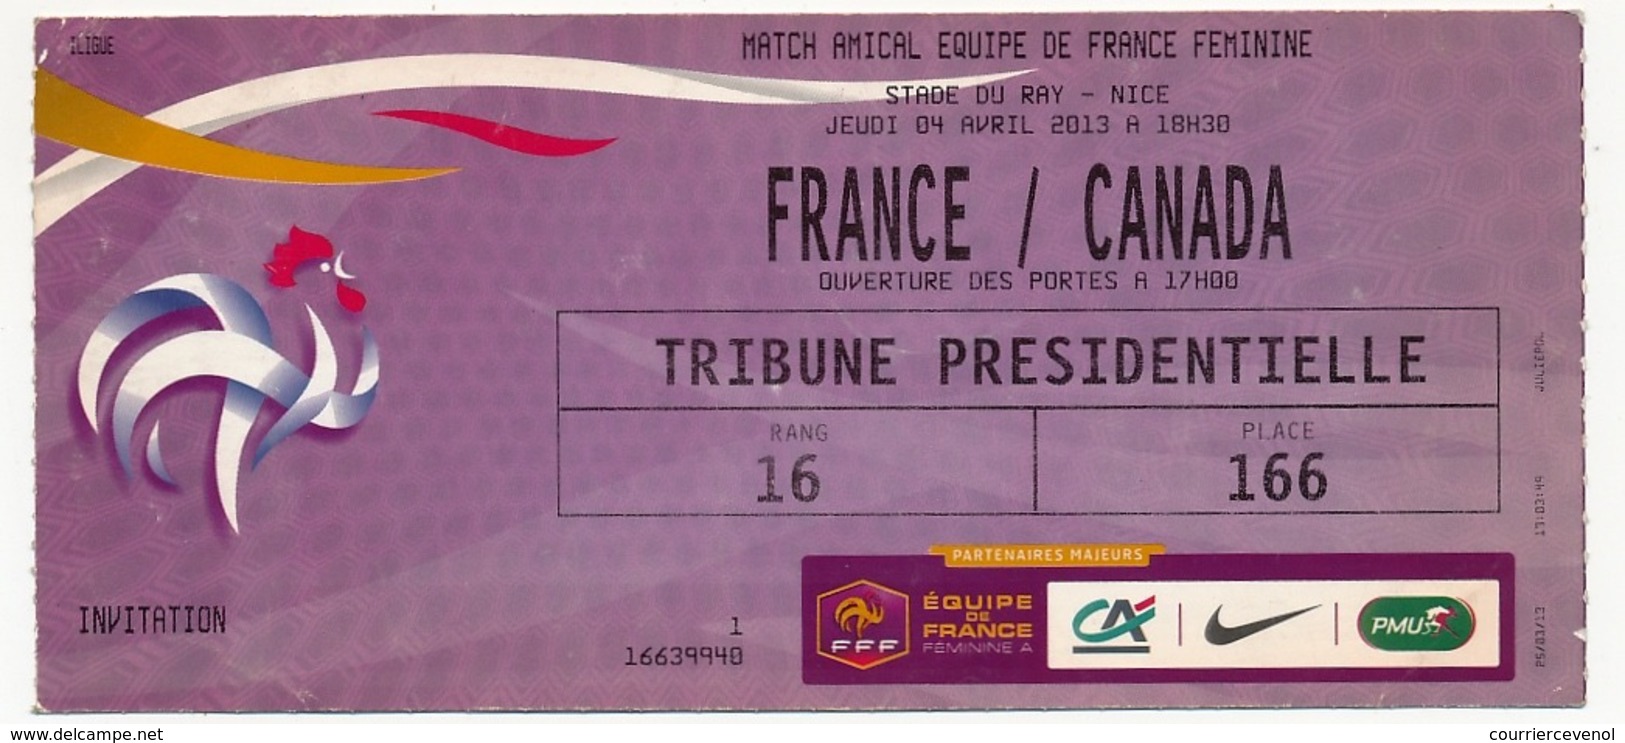 MARSEILLE - Billet D'entrée Match Amical Equipe De France Féminine - FRANCE CANADA - 4 Avril 2013 à NICE - Tickets - Vouchers